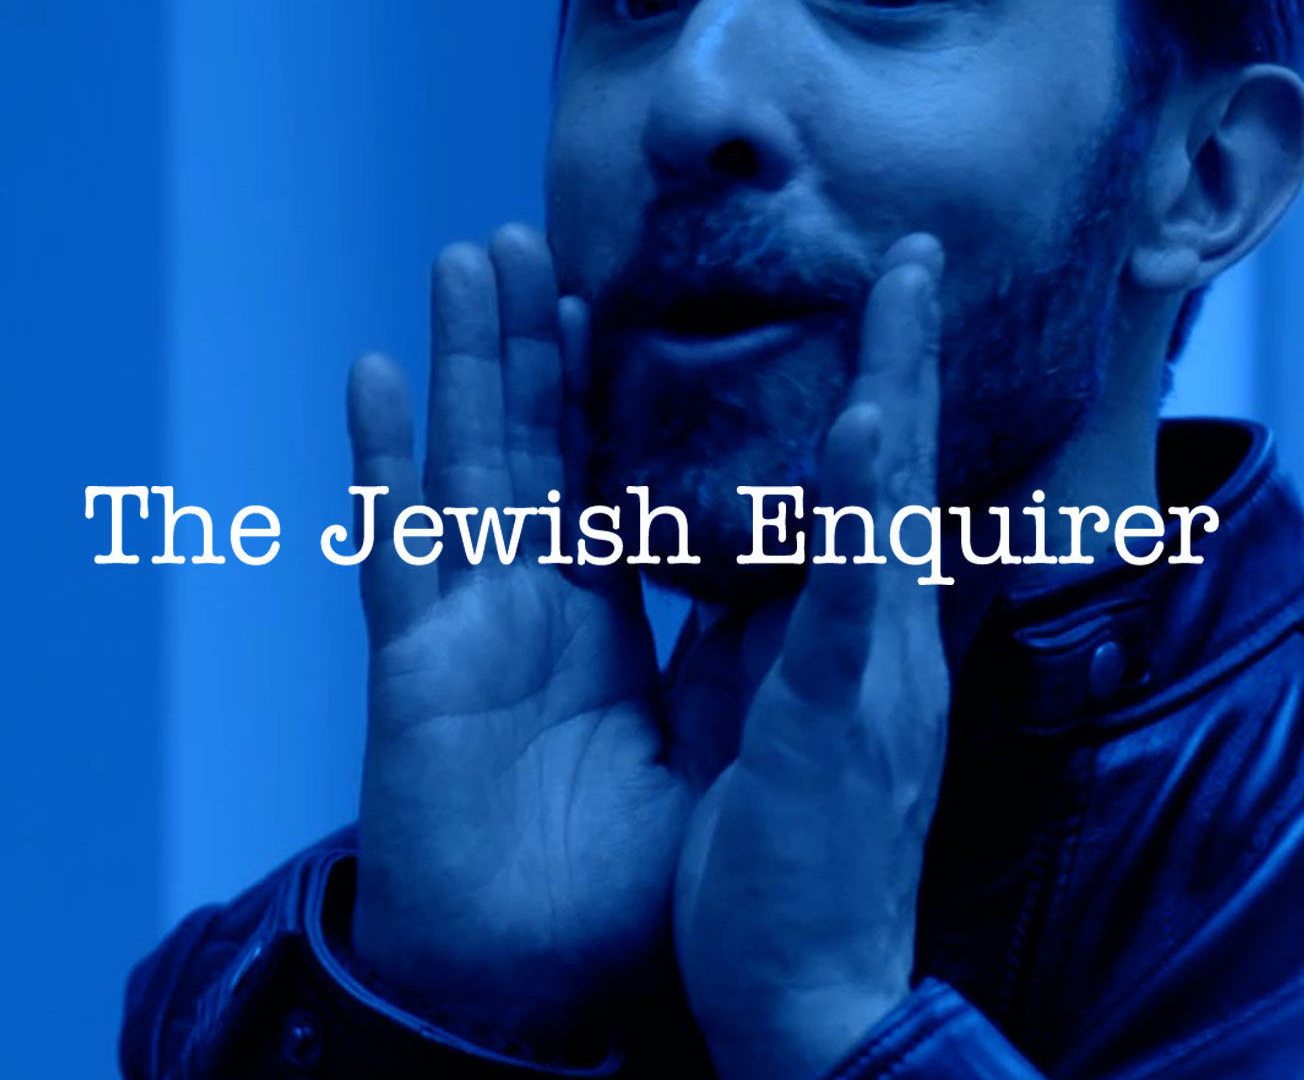 Сериал The Jewish Enquirer